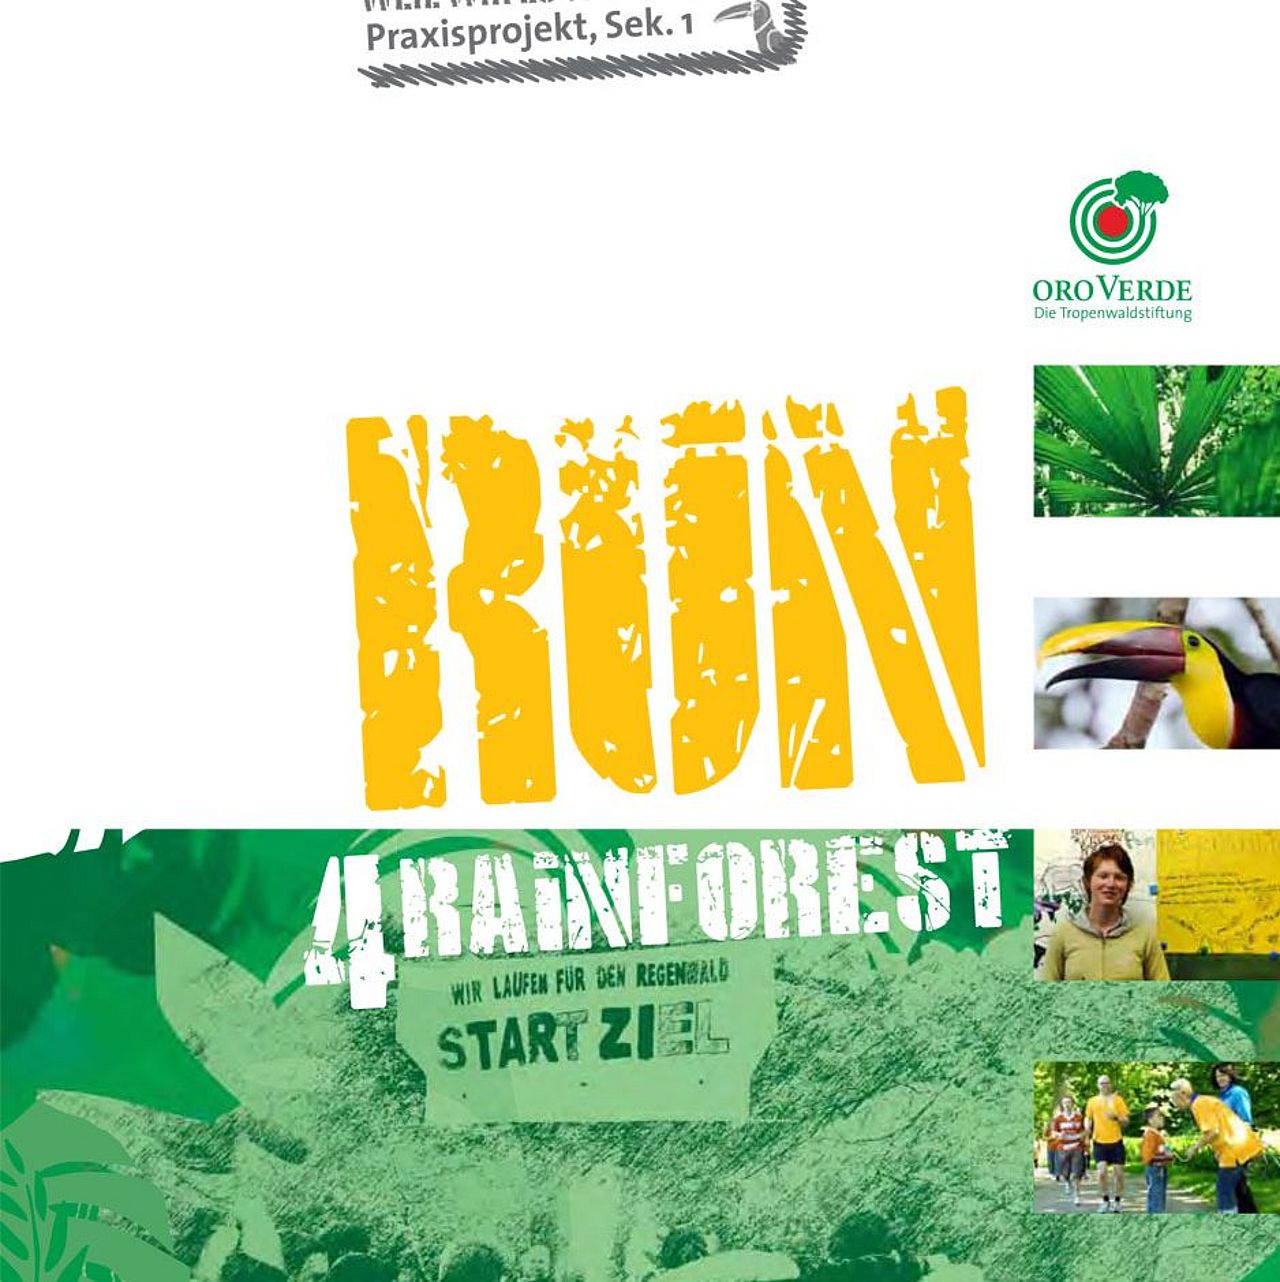 Praxisprojekt Sponsorenlauf Run 4 Rainforest